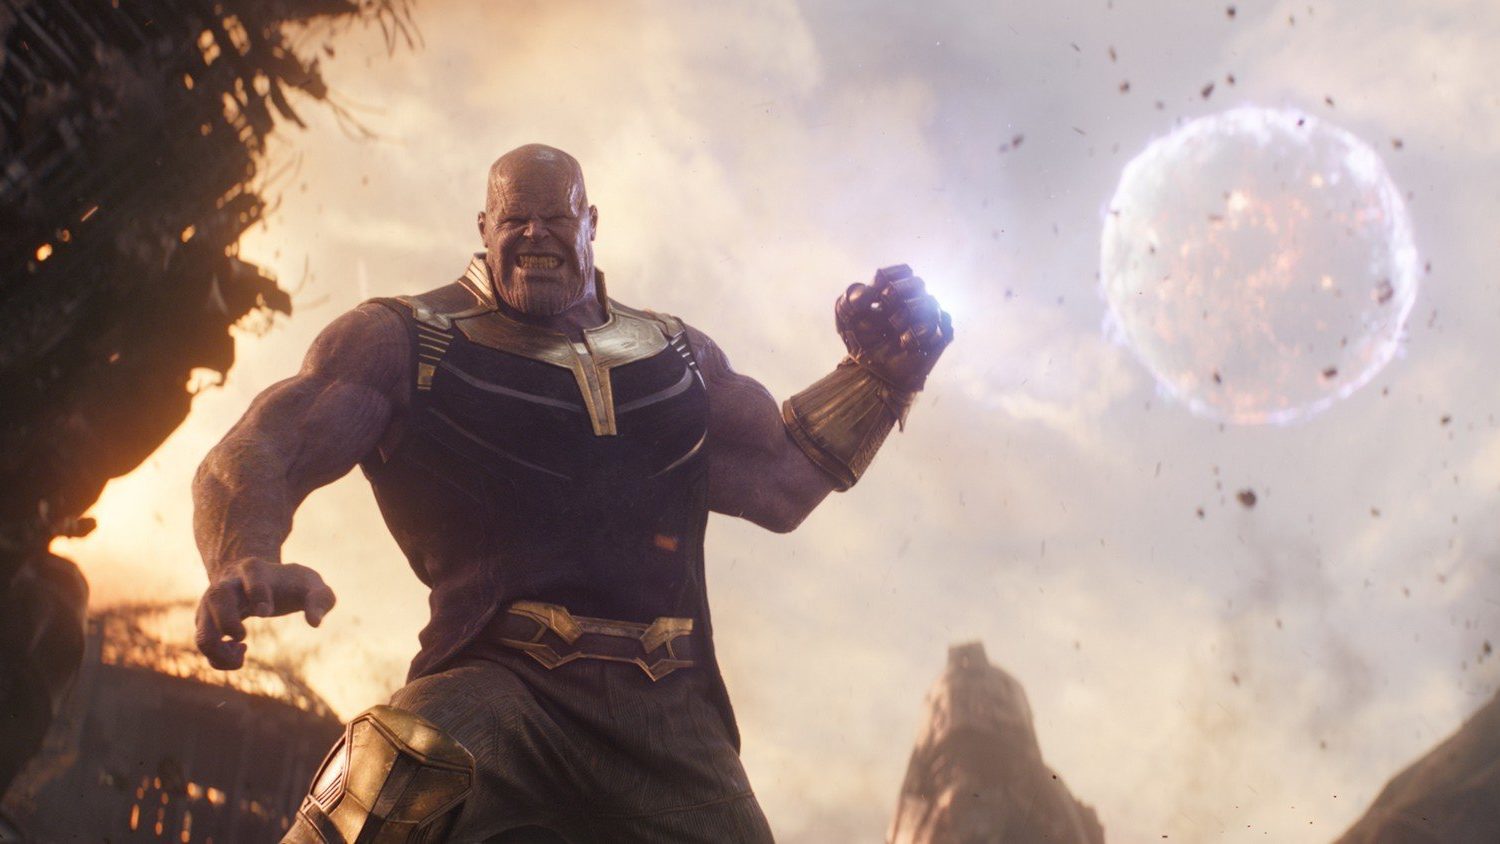 Arma de Thanos em Vingadores: Ultimato foi inspirada em arco infame do vilão